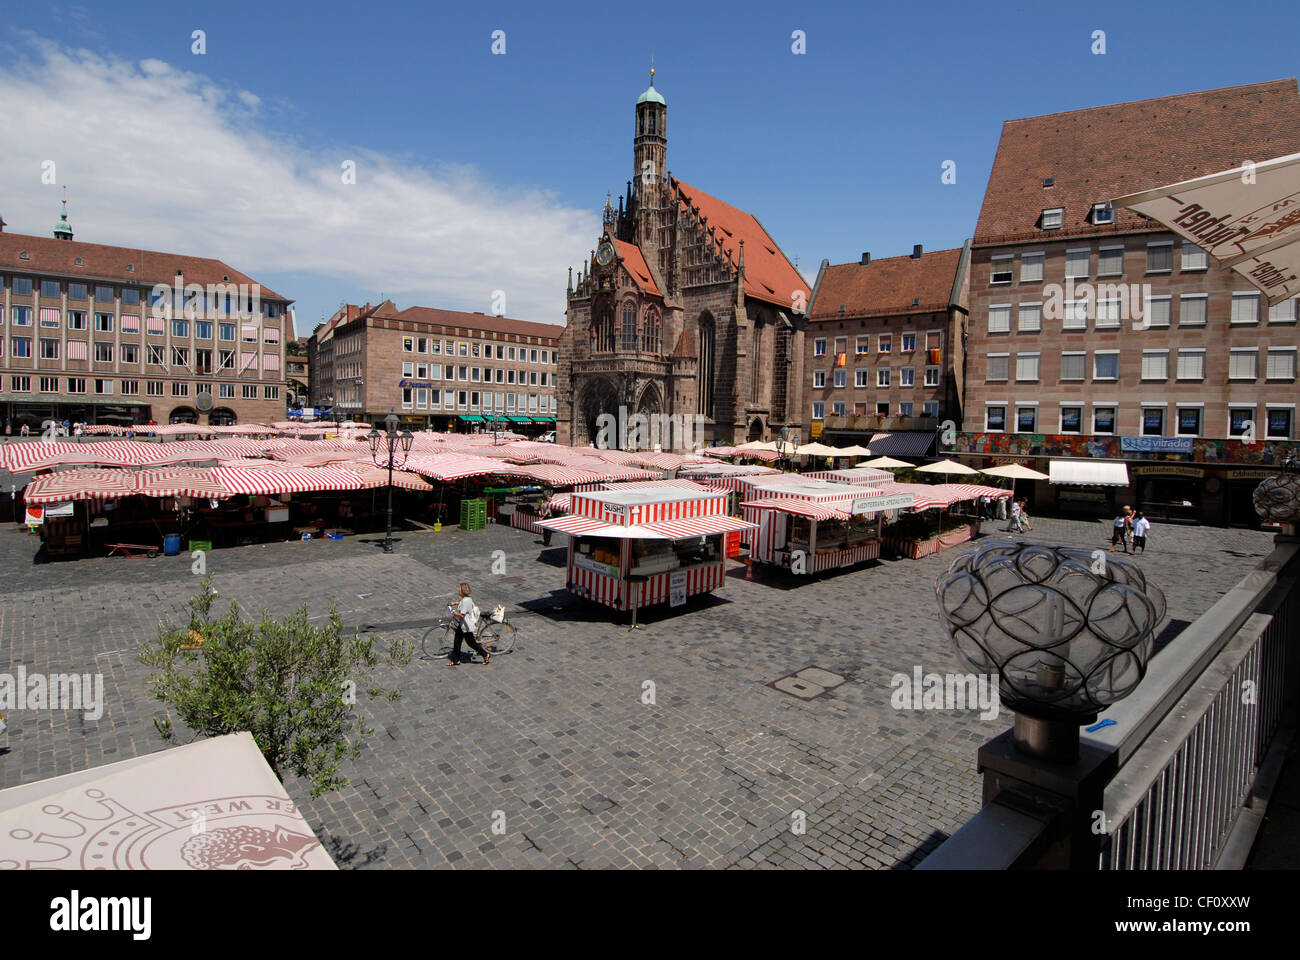 La place principale du marché de Nuremberg (Hauptmarkt) et la Frauren Kirche (église de la femme).Bavière, Allemagne Banque D'Images